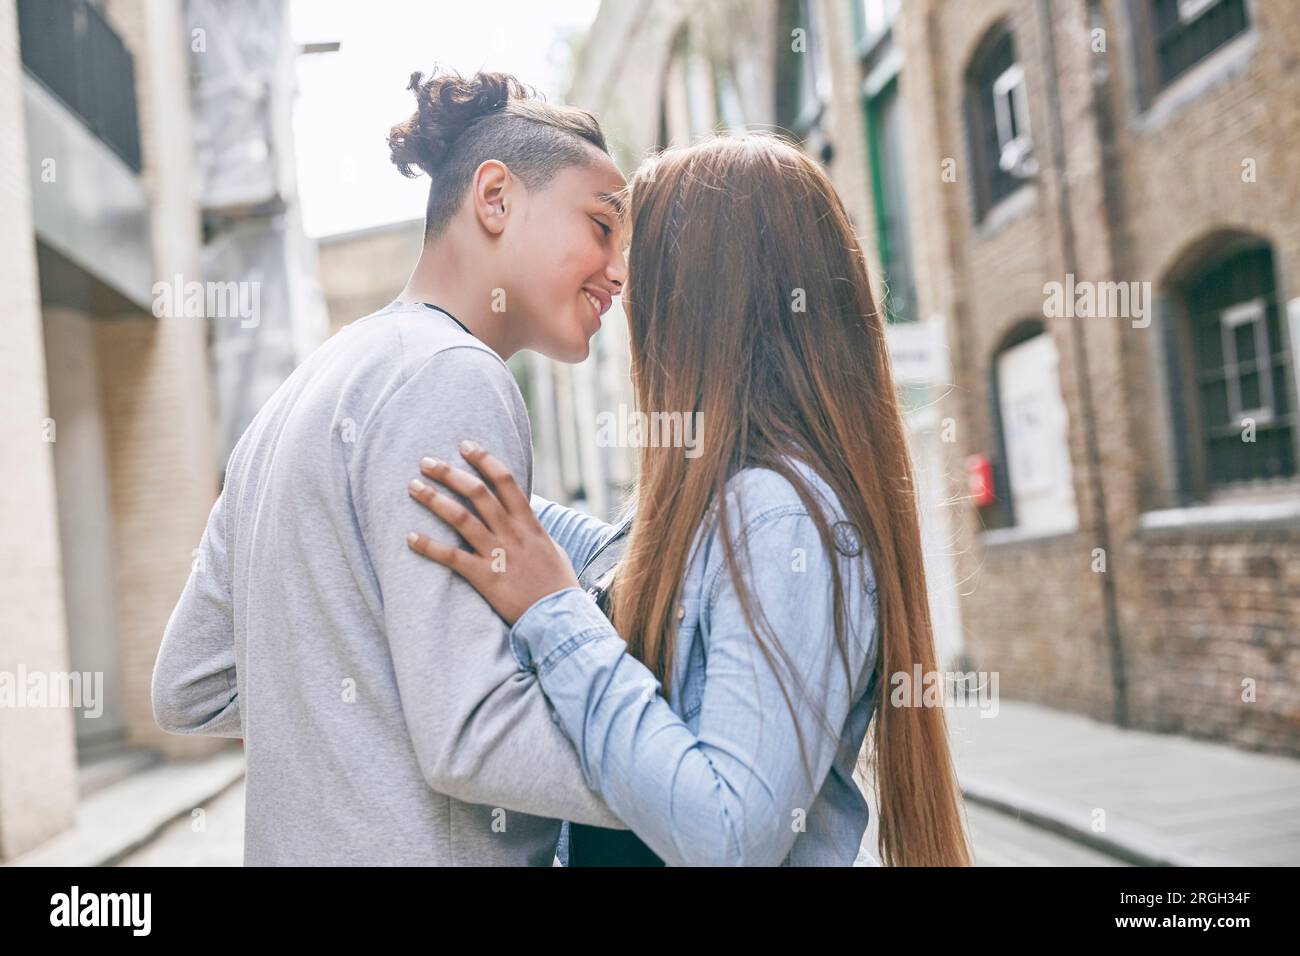 Teenage couple embracing Stock Photo